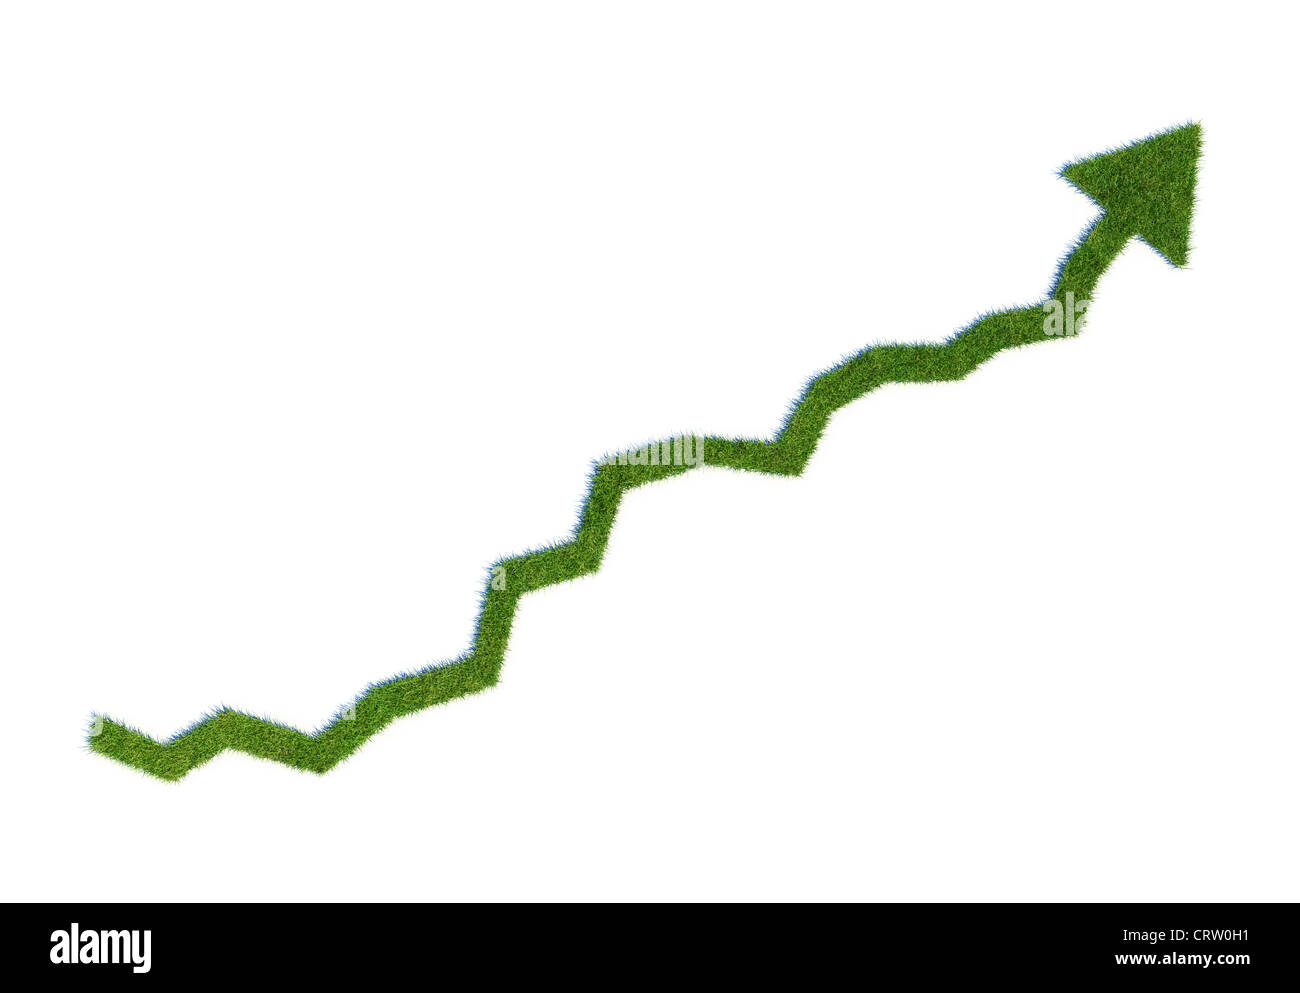 Grass wachsenden Graph - grüne Business Konzept Abbildung Stockfoto